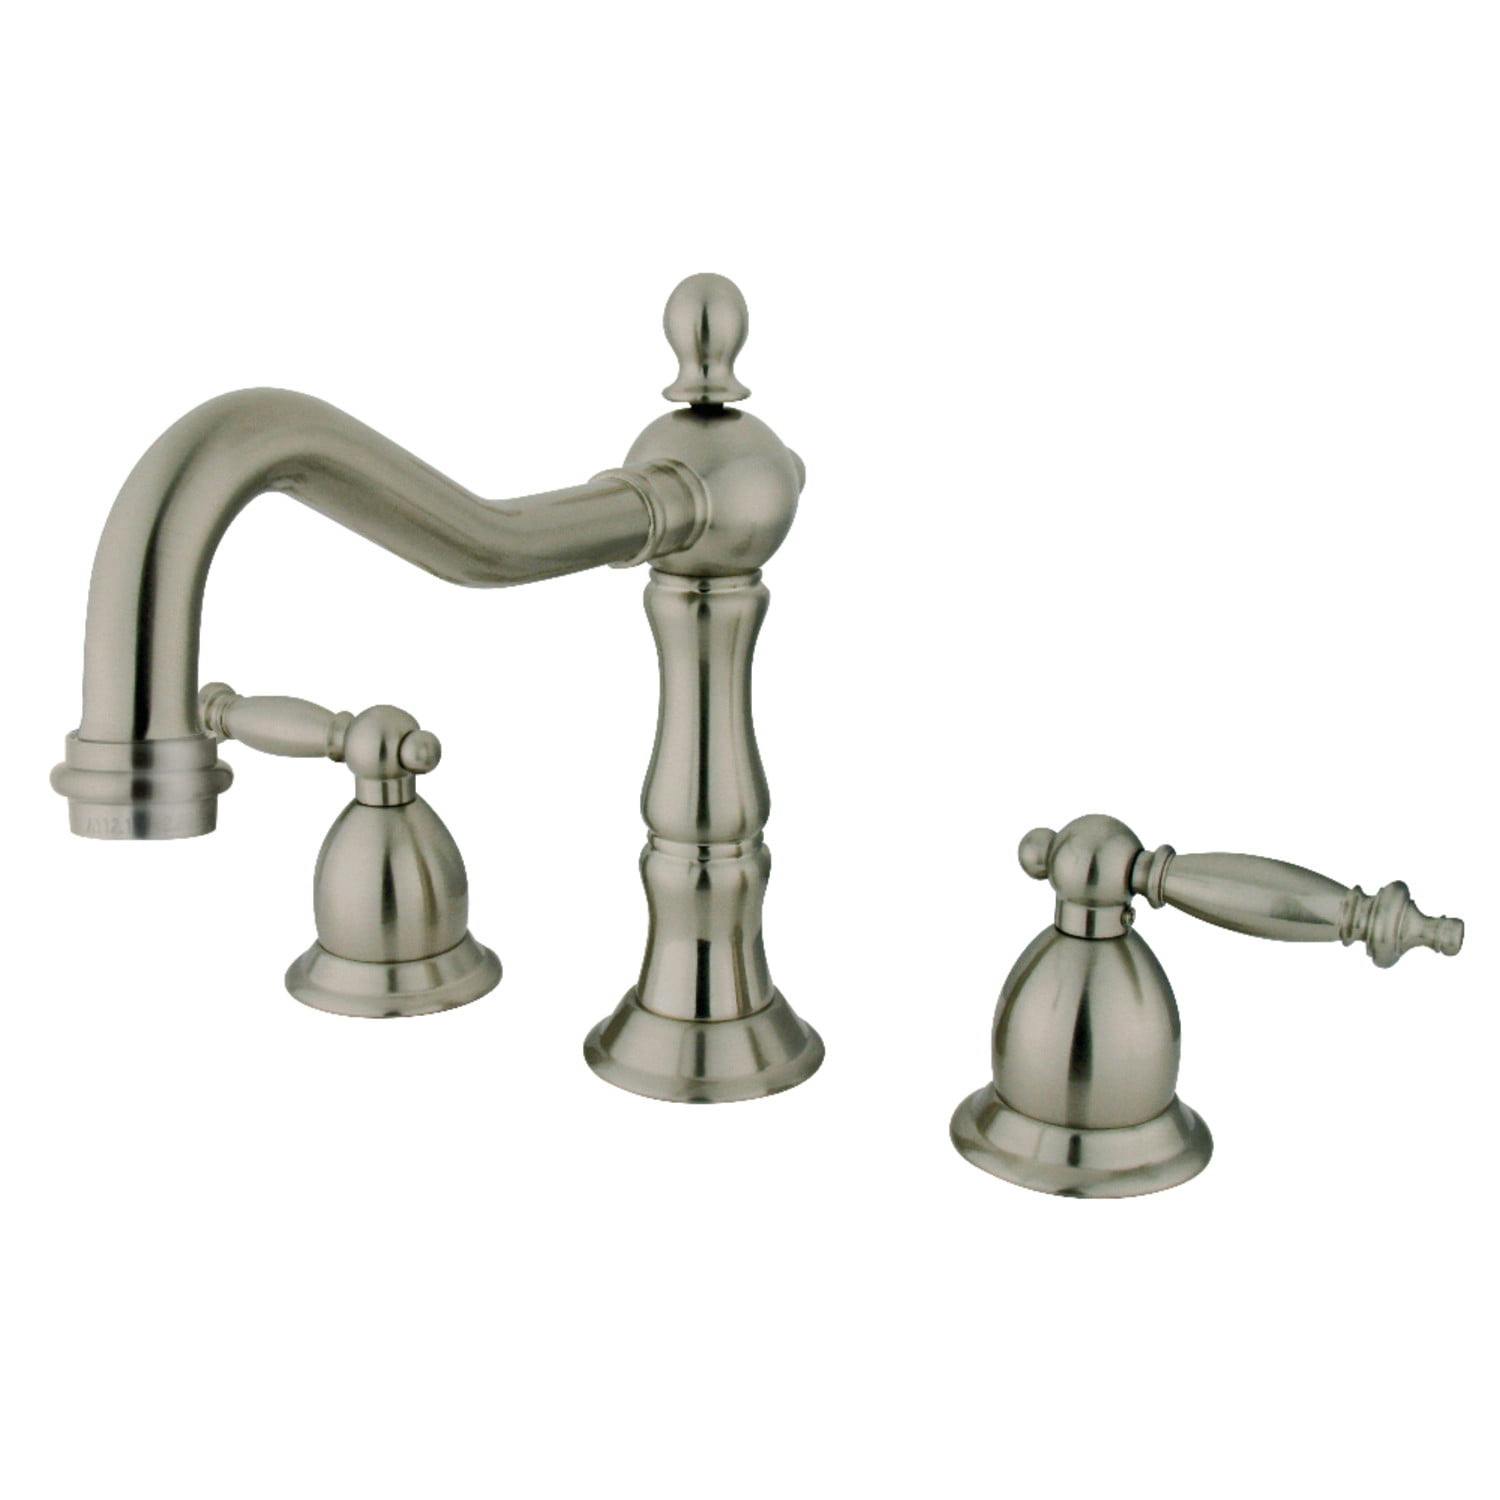 Elegant Heritage Brushed Nickel Widespread Bathroom Faucet